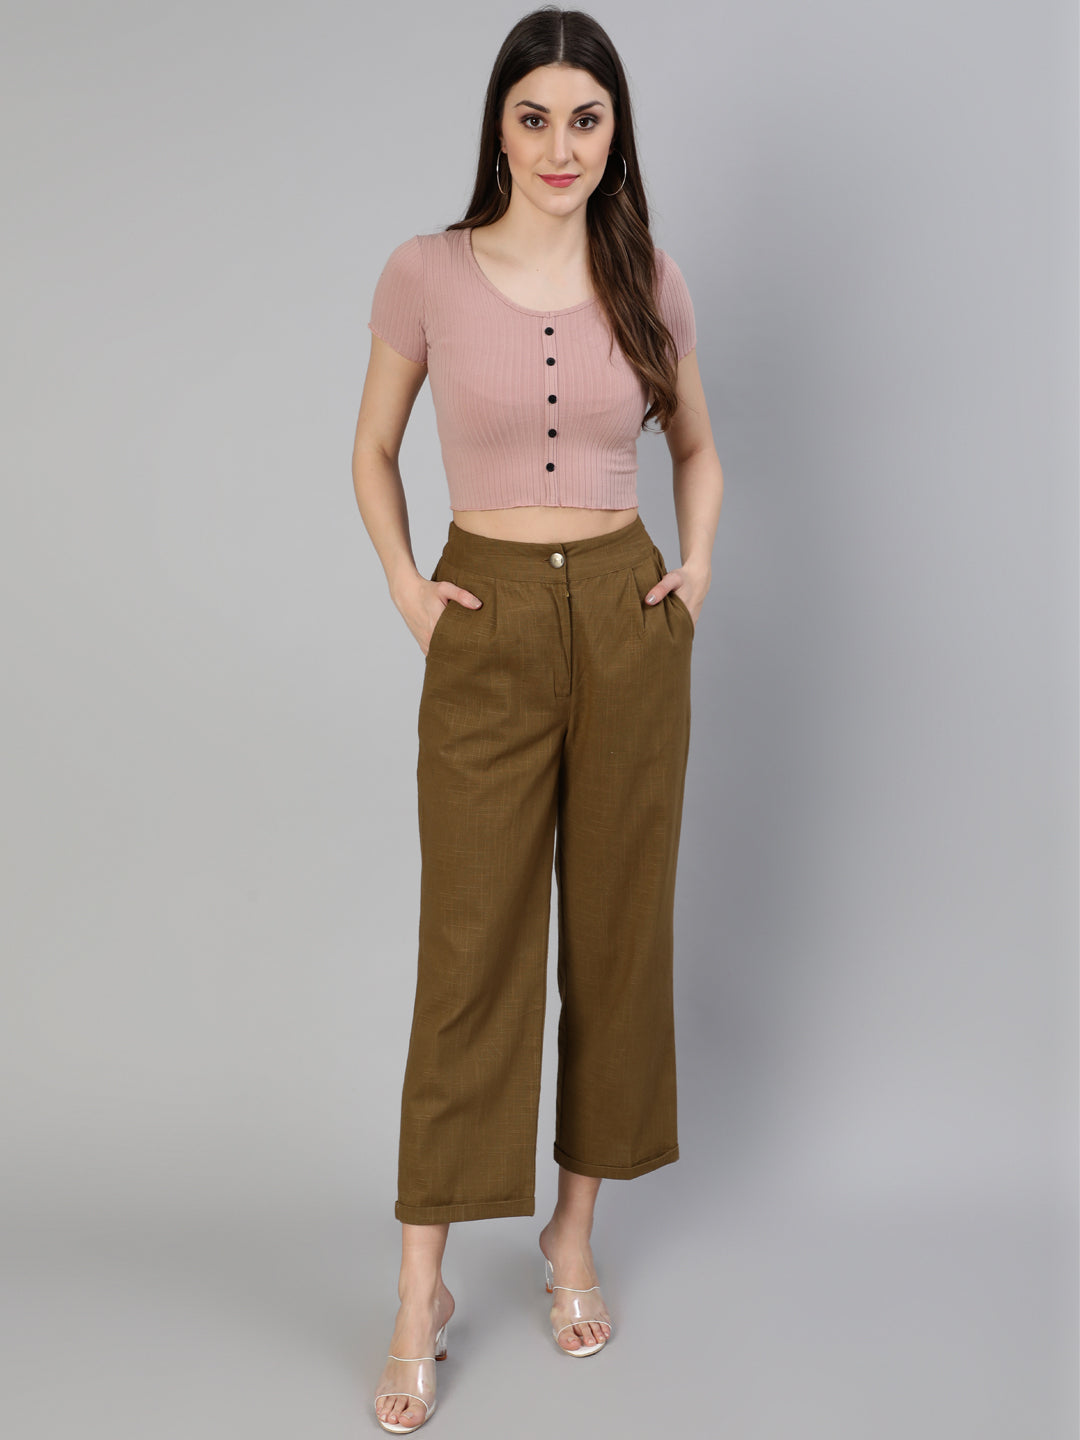 Shop Smart Look Pants for Women